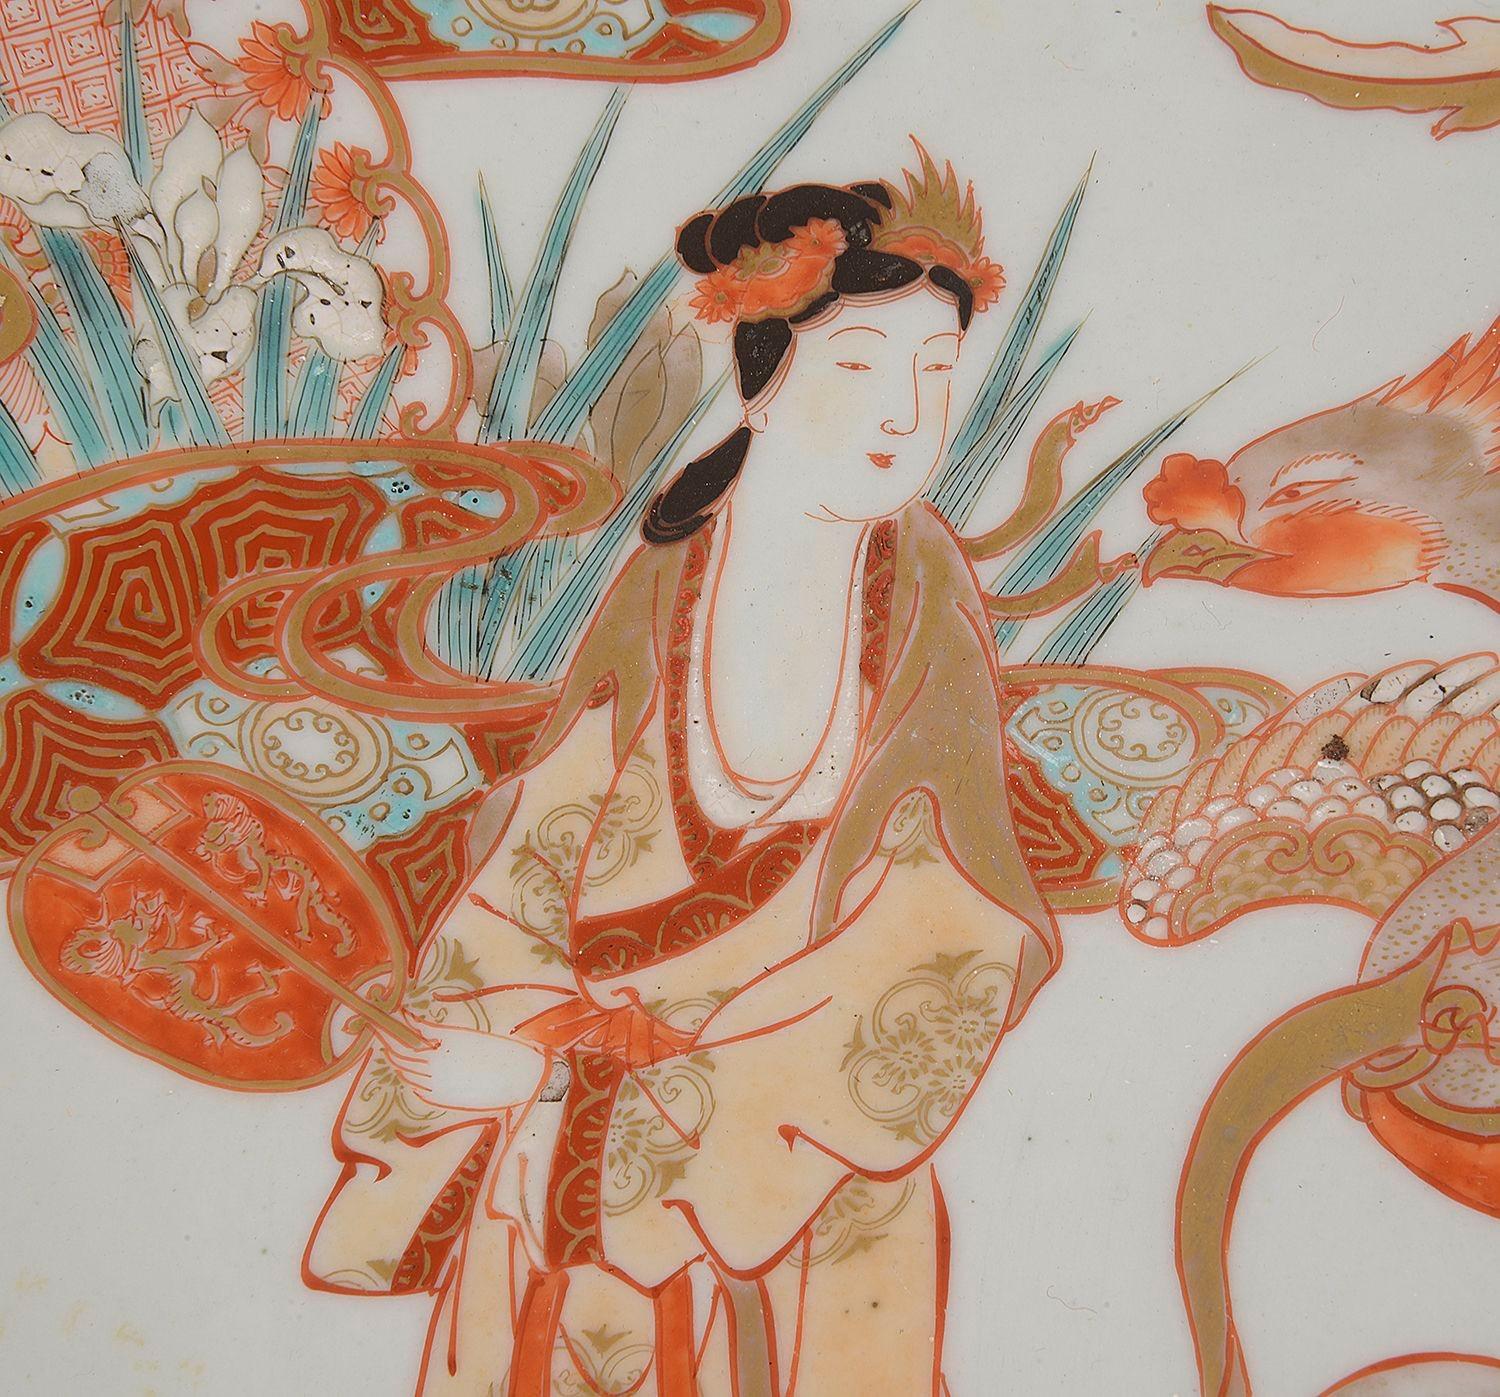 Charmant chargeur en porcelaine japonaise Imari de la fin du XIXe siècle, représentant des Geisha portées par des dragons et des oiseaux mythiques exotiques parmi des roseaux et des fleurs.


Lot 76 N/H